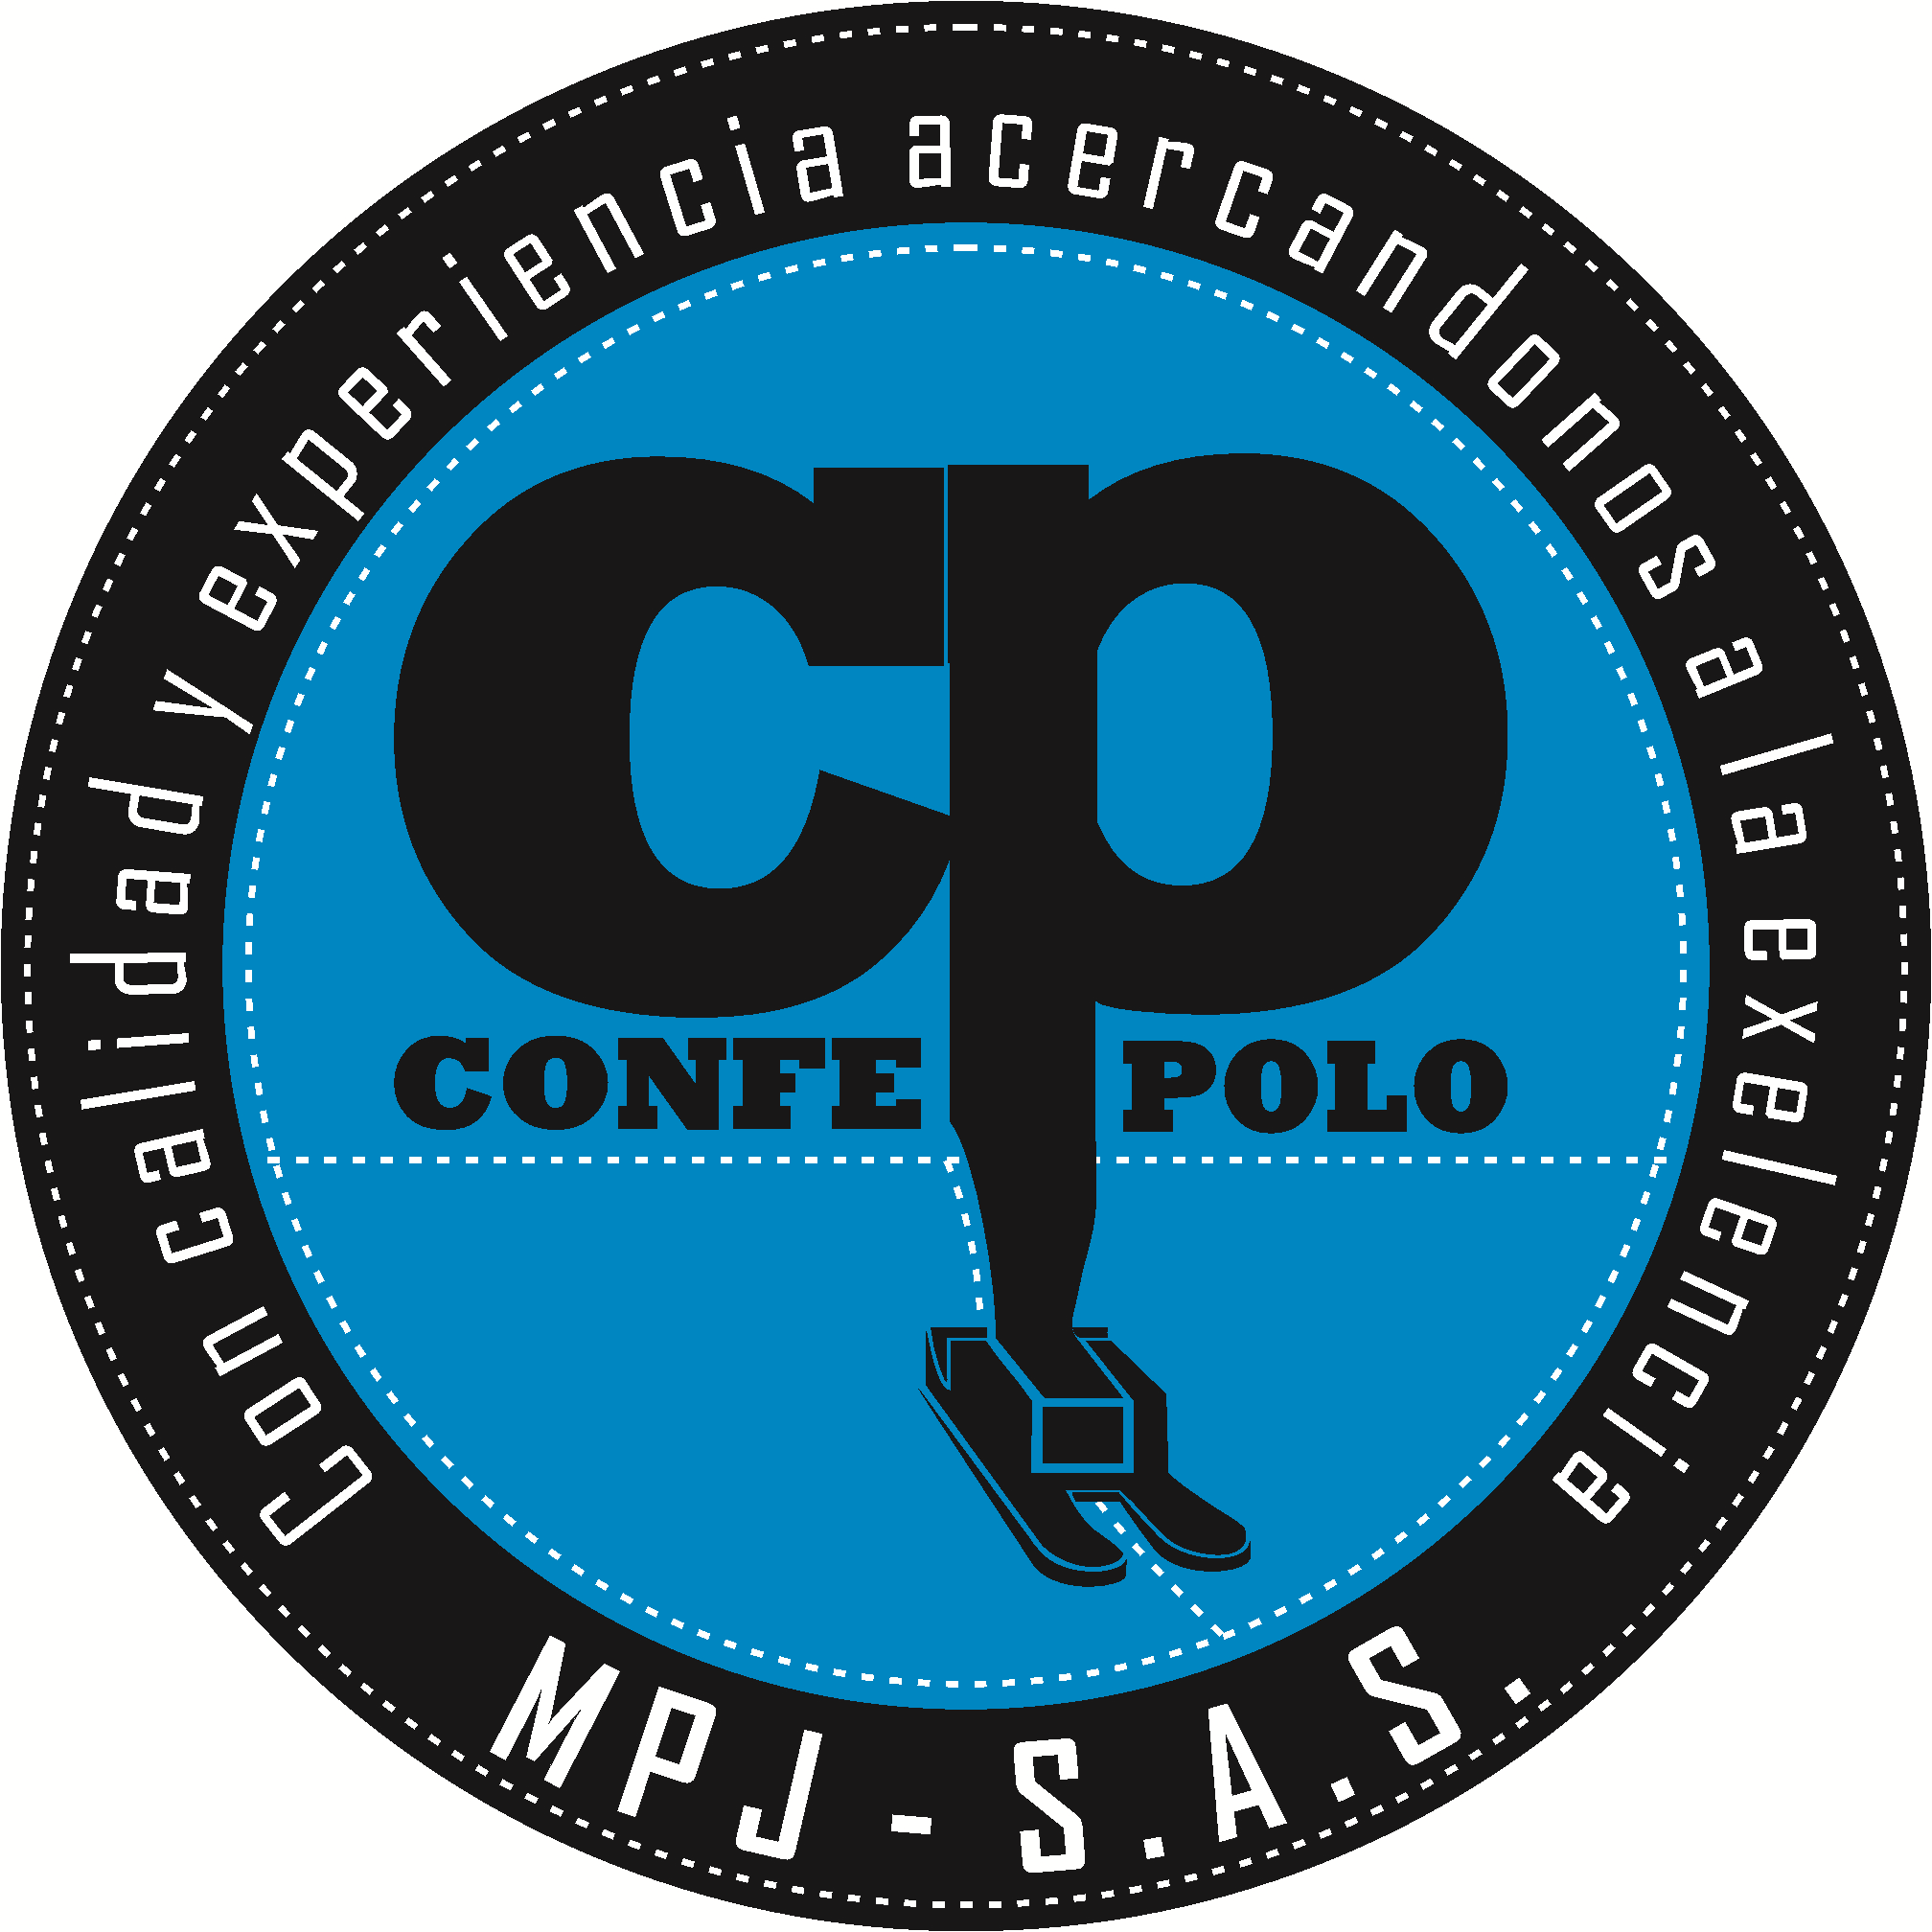 Confecciones Polo MPJ S.A.S.